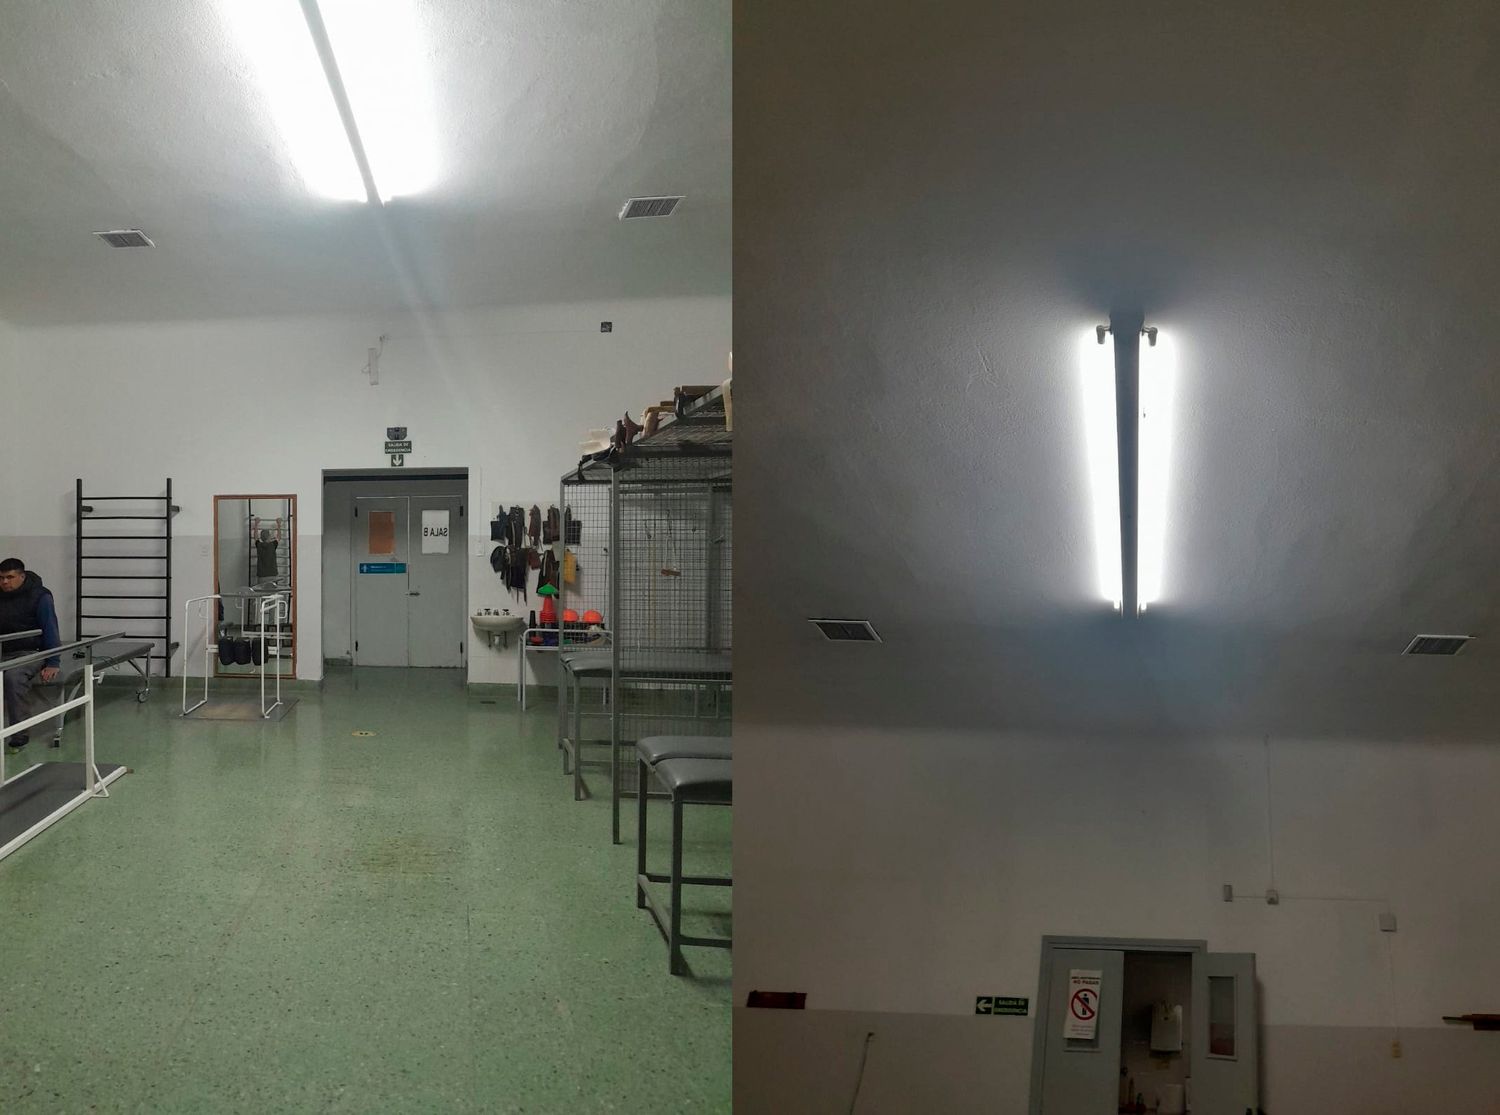 El hospital Irurzun tiene nueva luminaria gracias a una donación